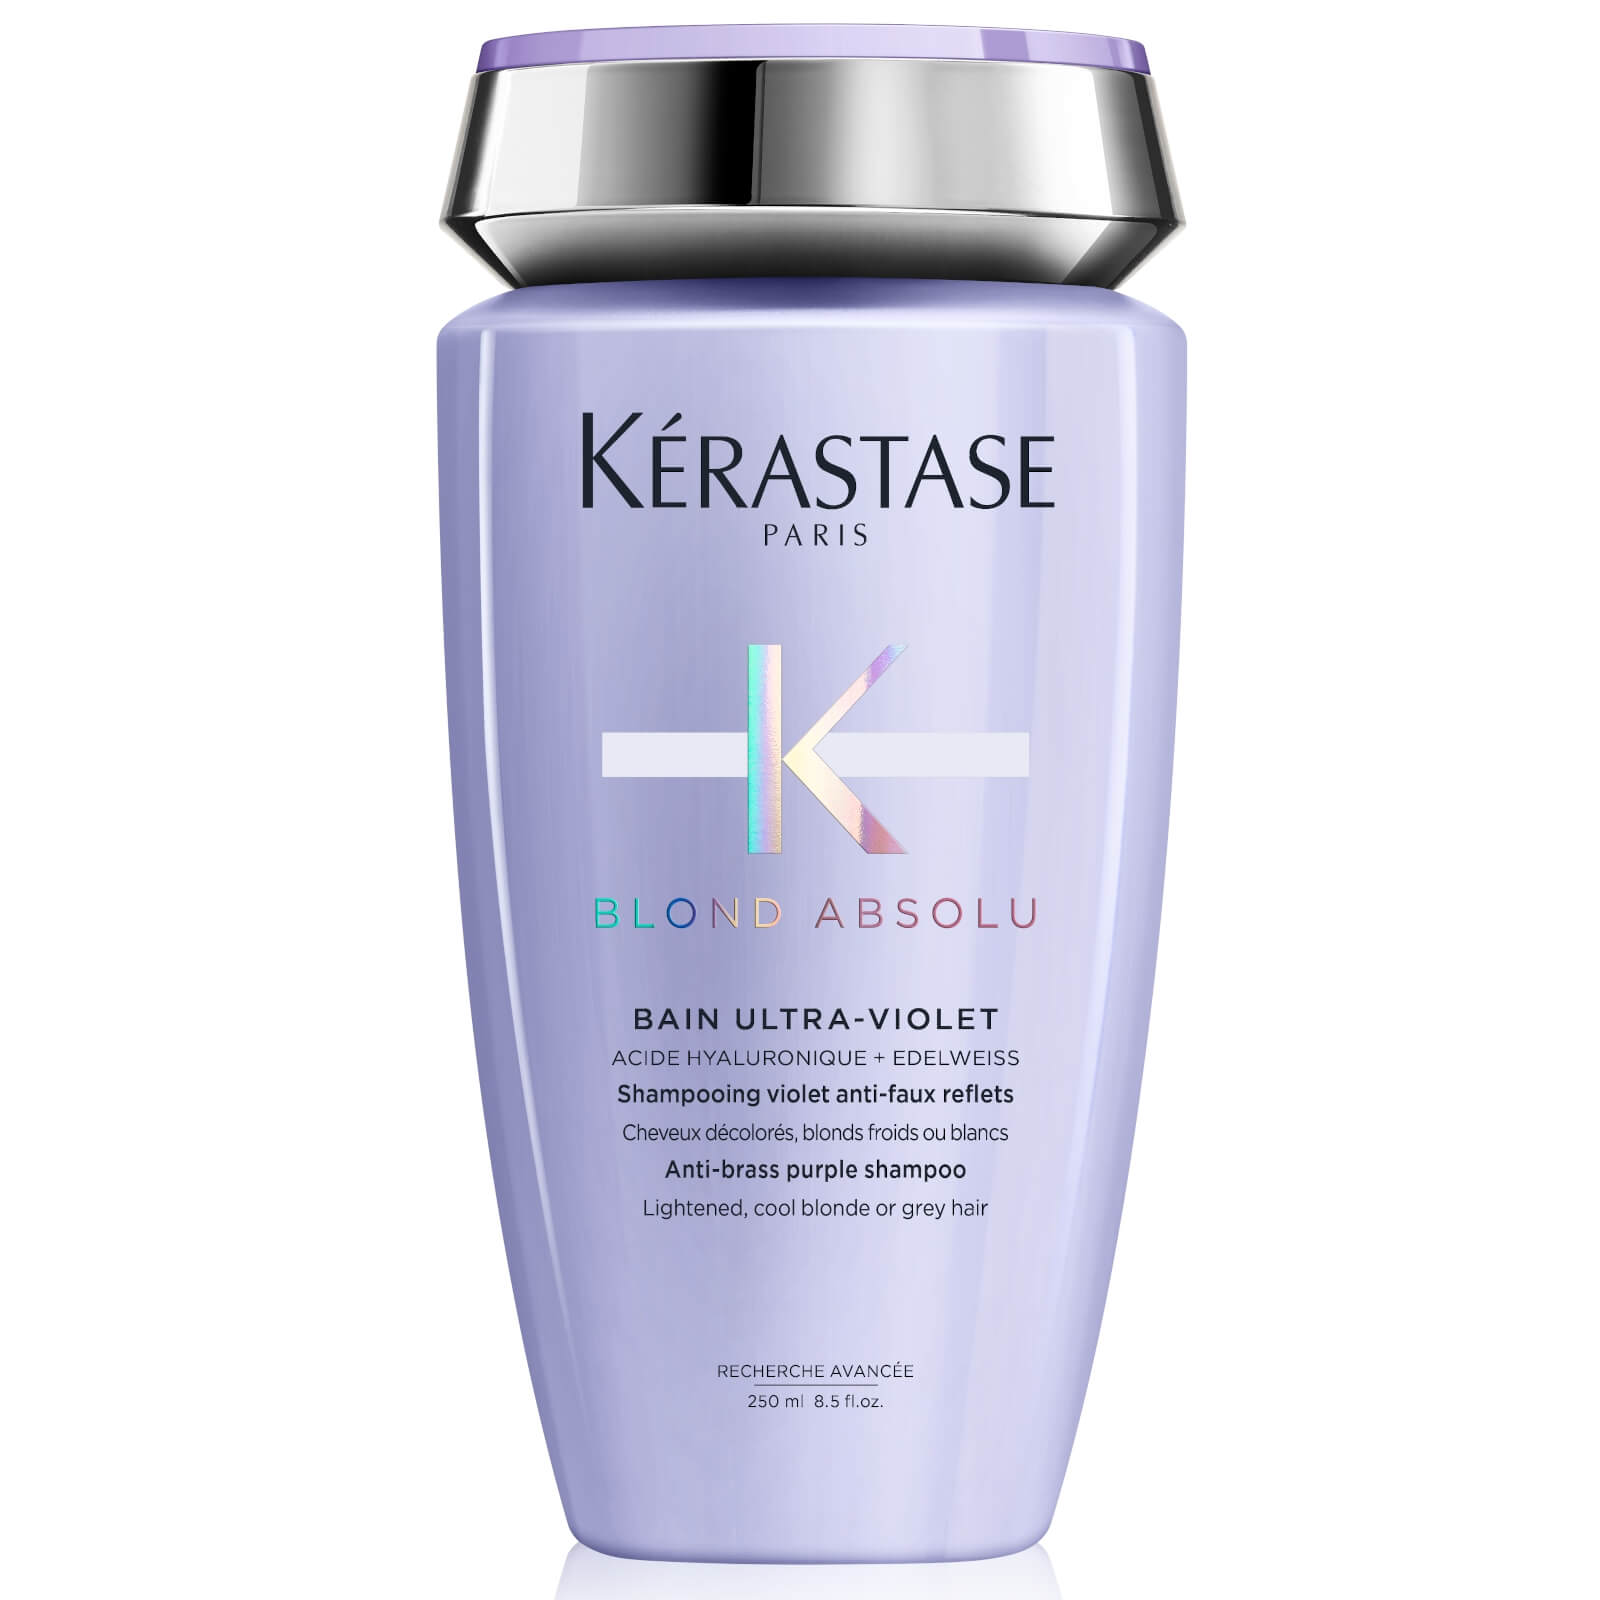 Kerastase Kérastase Blond Absolu Bain Ultra-violet Shampoo 250ml In White